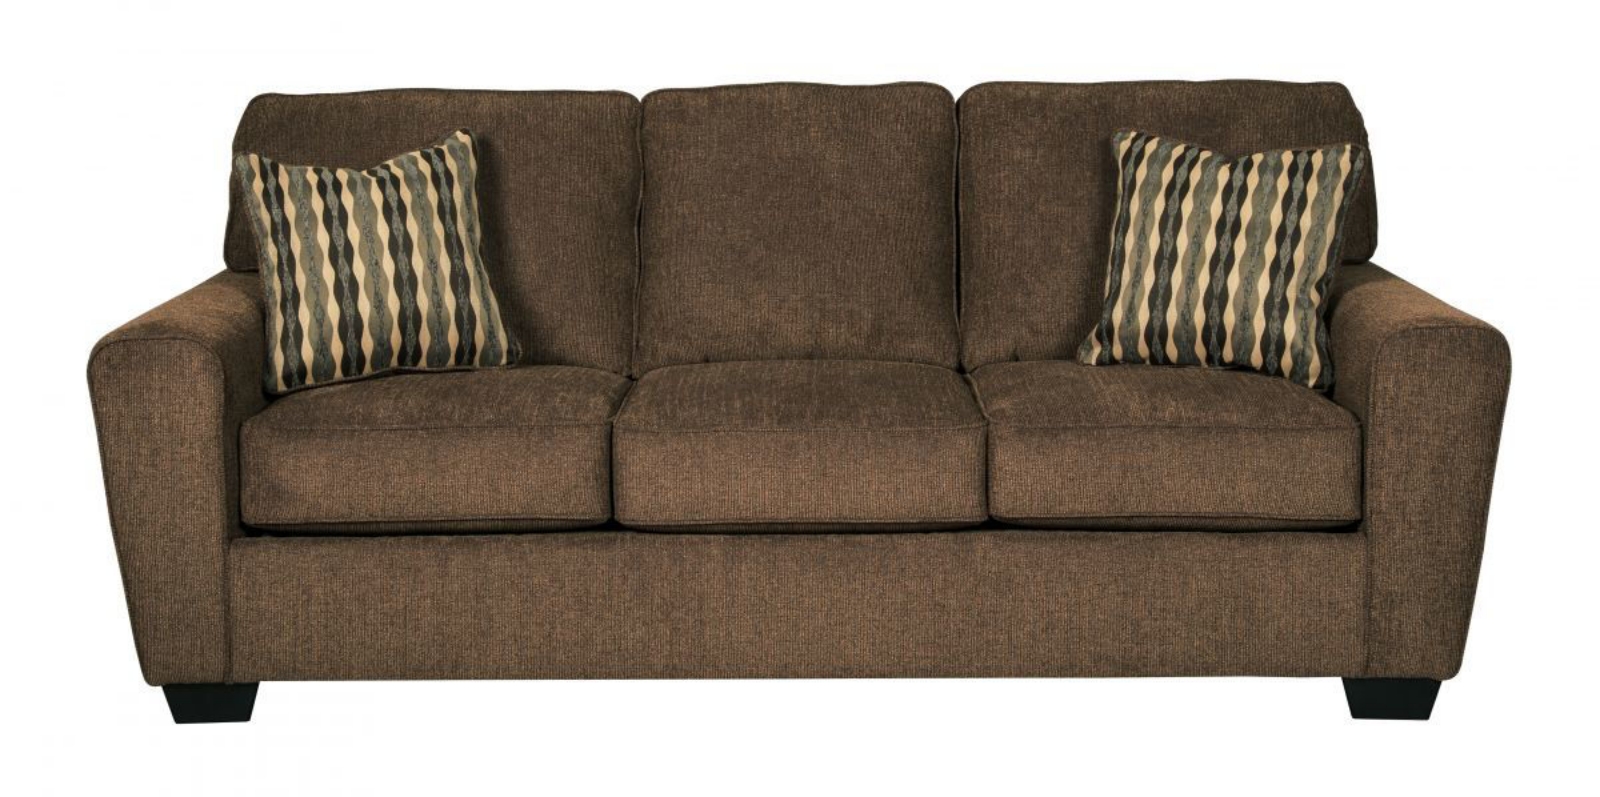 Picture of Landoff Sofa